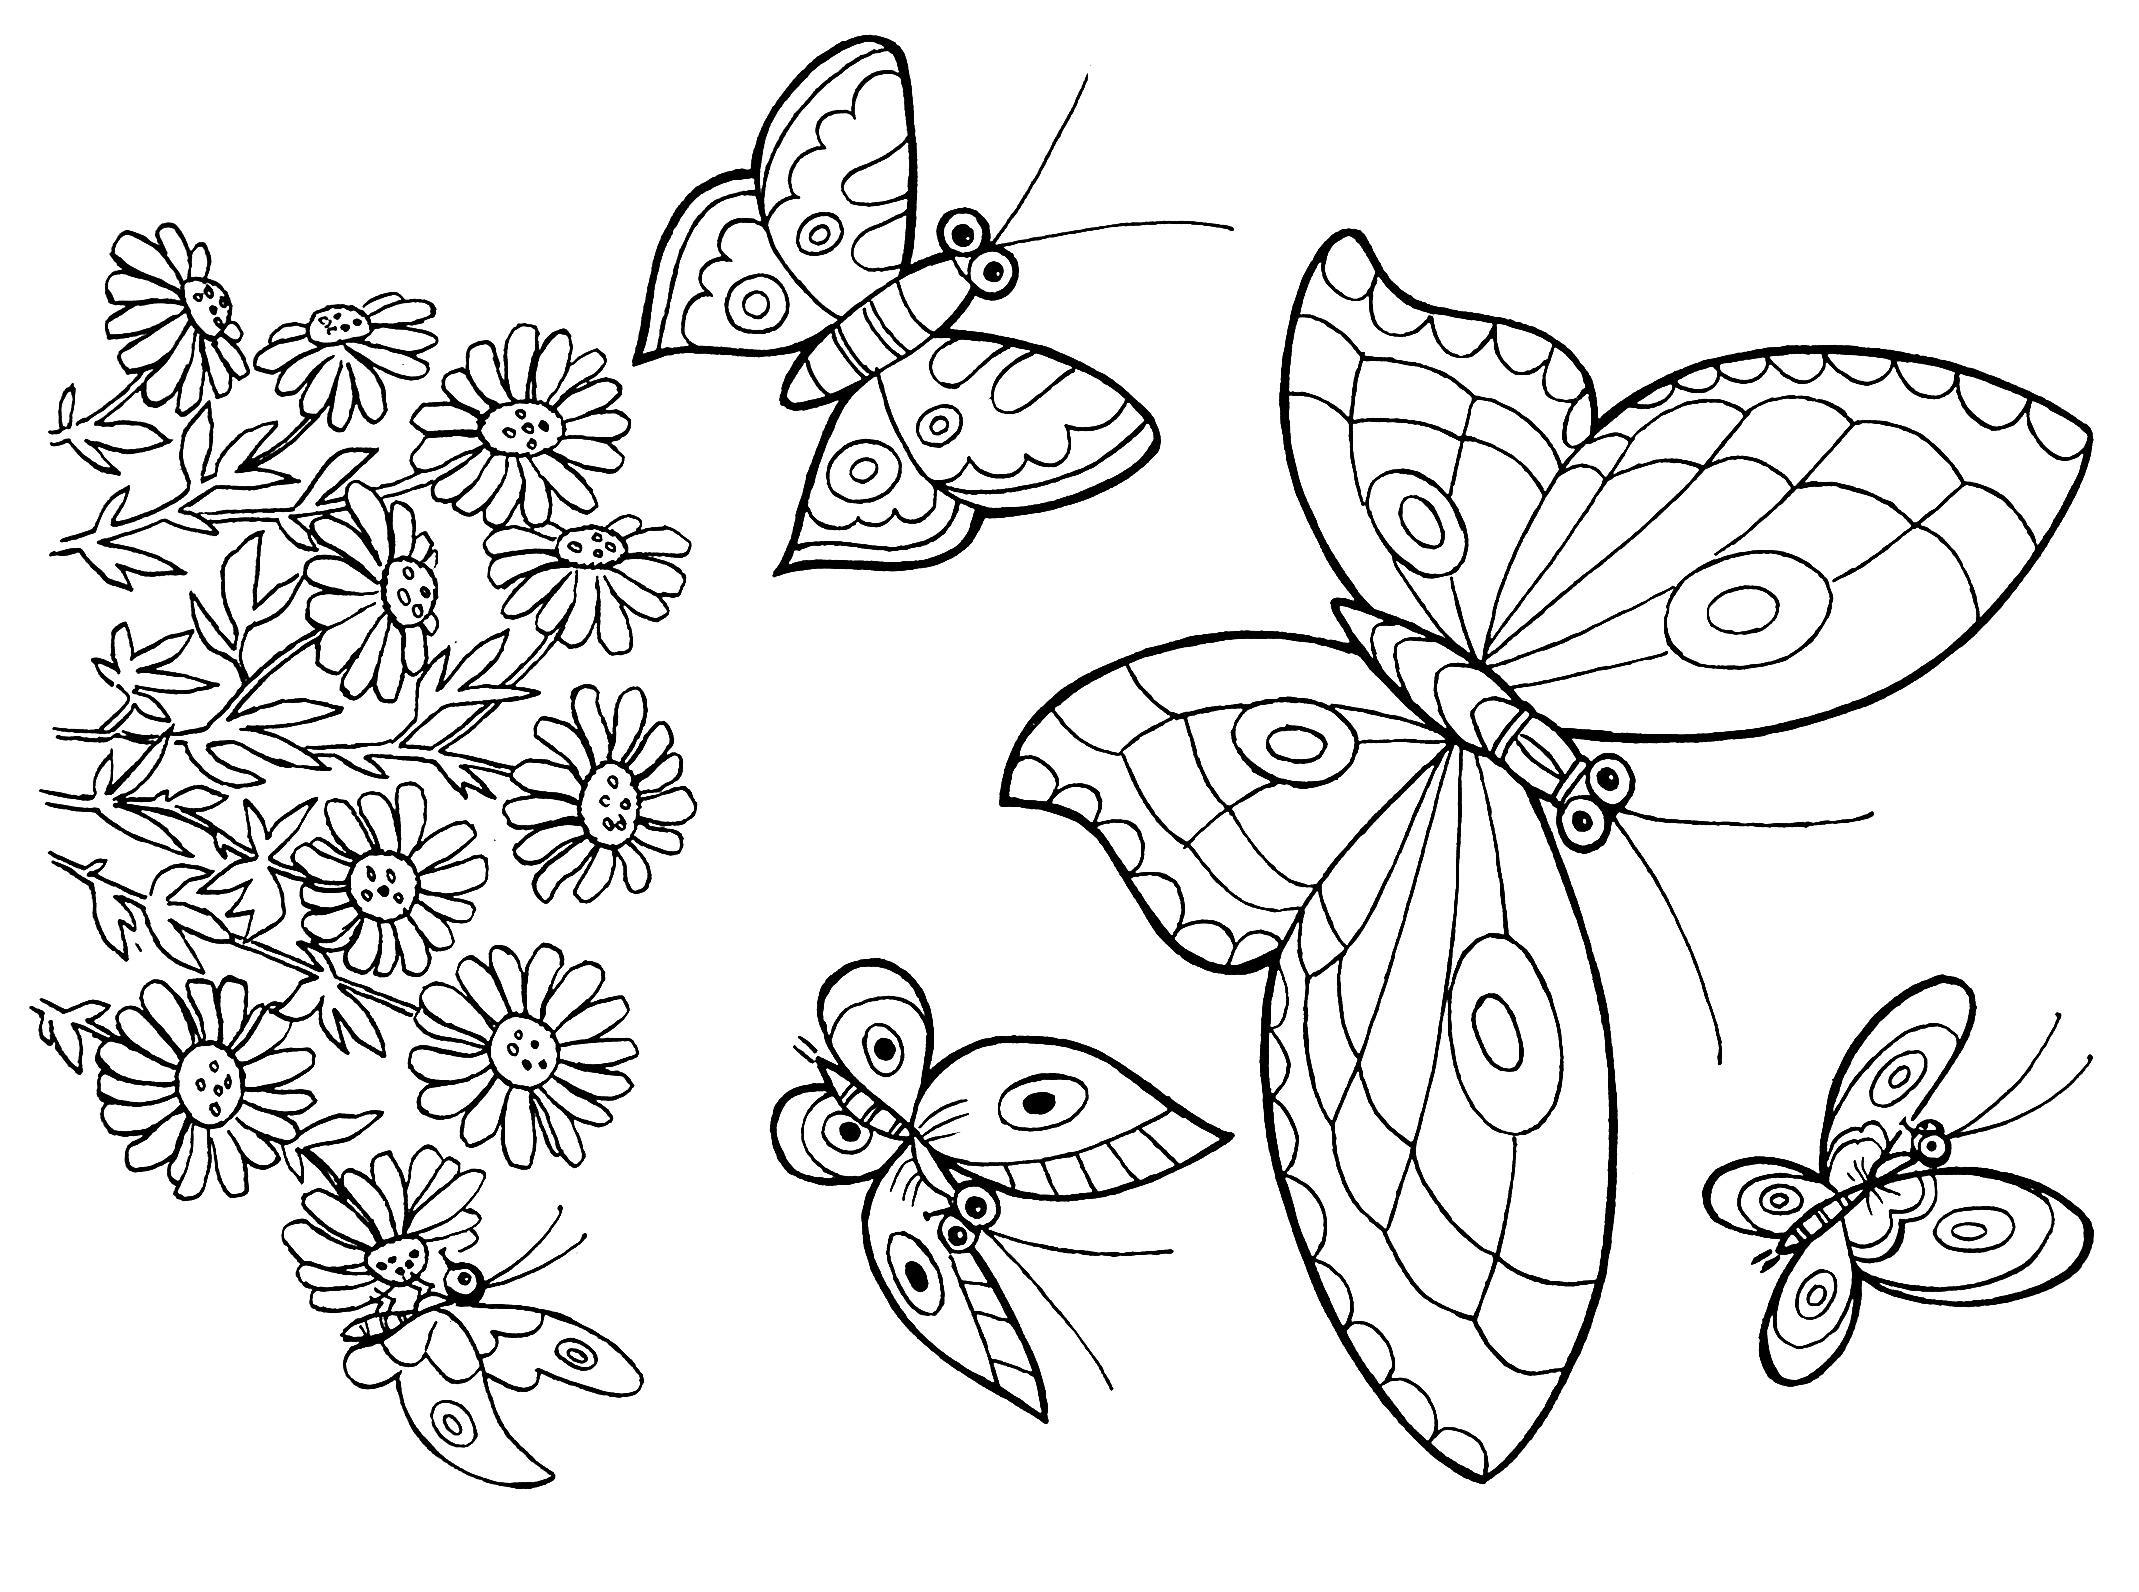 Раскраска симбочка распечатать. Раскраска "бабочки". Бабочка раскраска для детей. Раскраска для девочек бабочки. Цветы и бабочки. Раскраска.